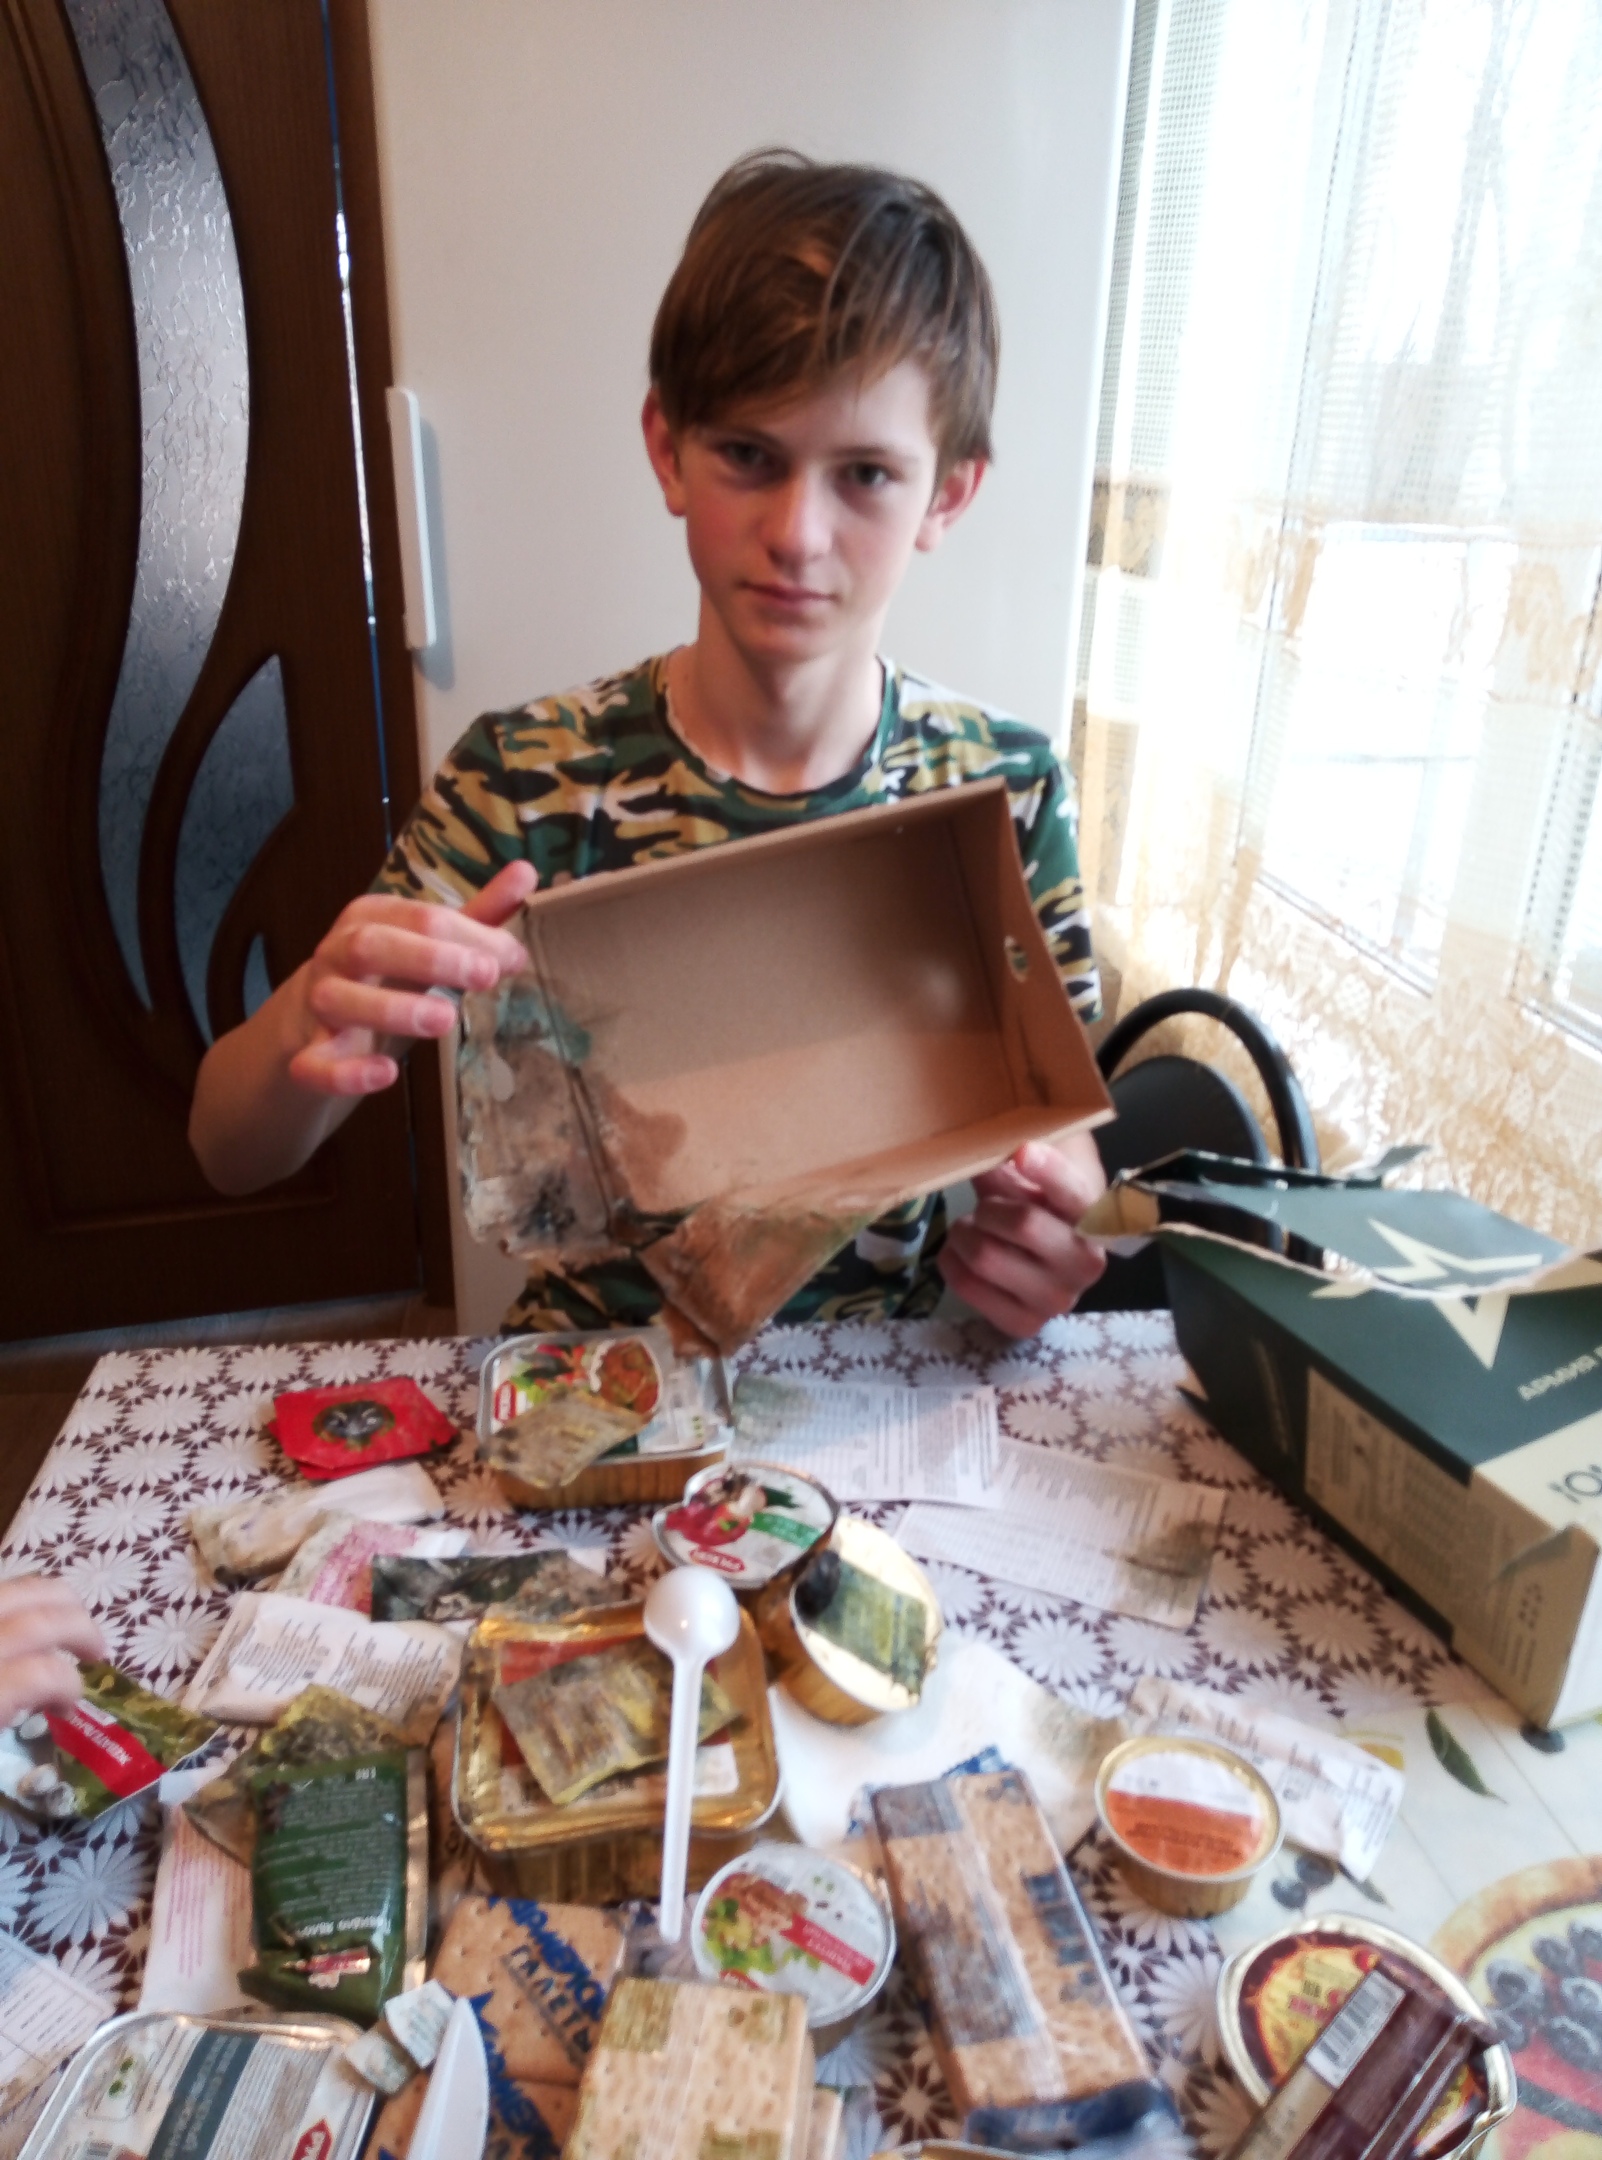  Мальчика-героя  из Климово приглашают на телепередачу в столицу